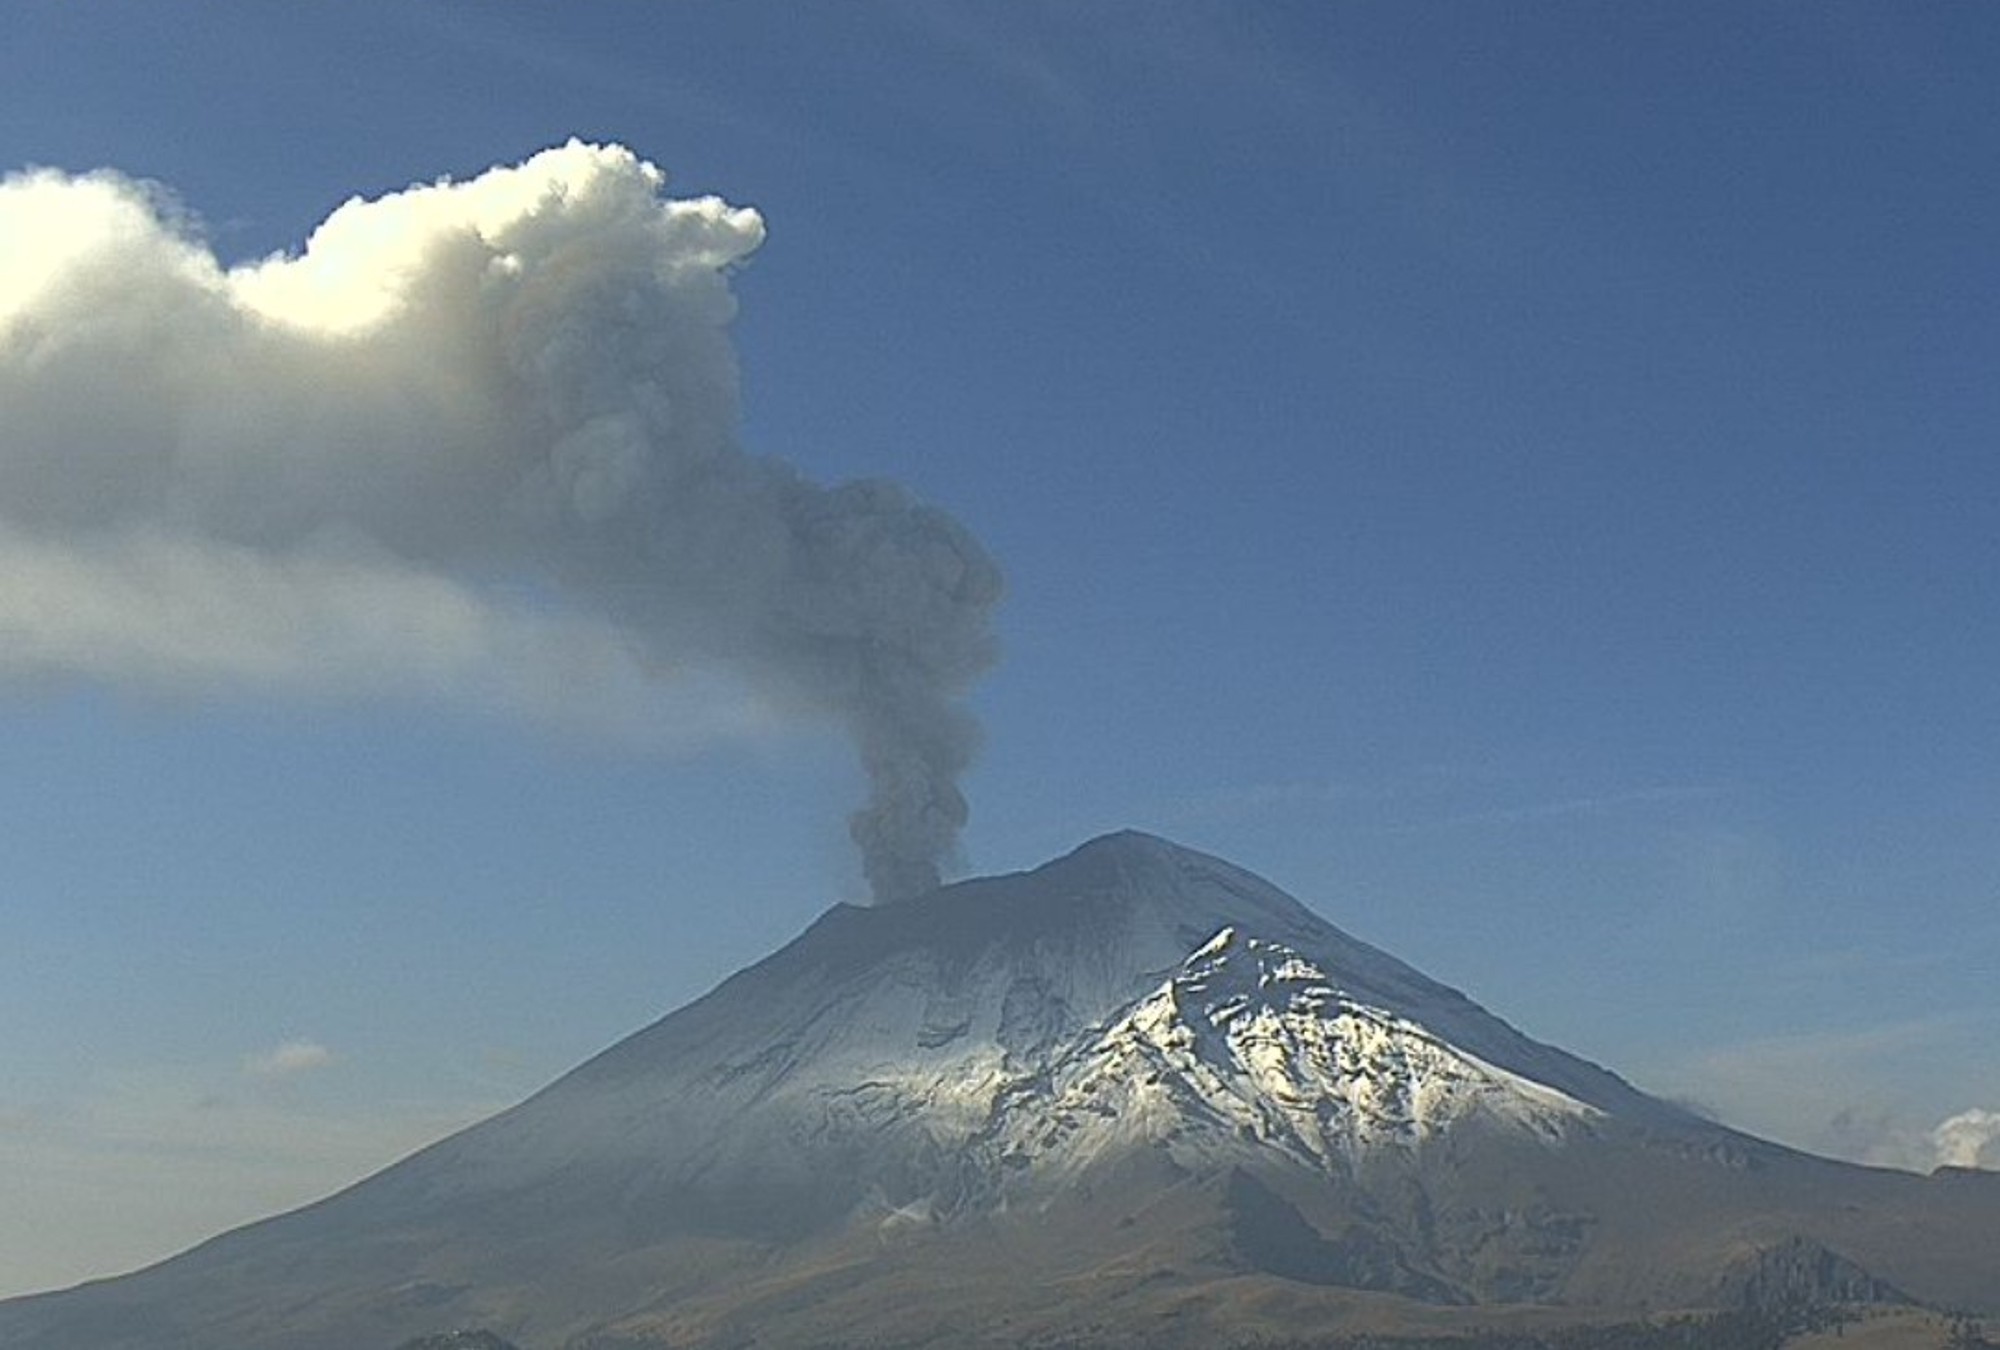 Nos encontramos en alerta AMARILLA FASE 3 del Semáforo de Alerta Volcánica del Popocatépetl.